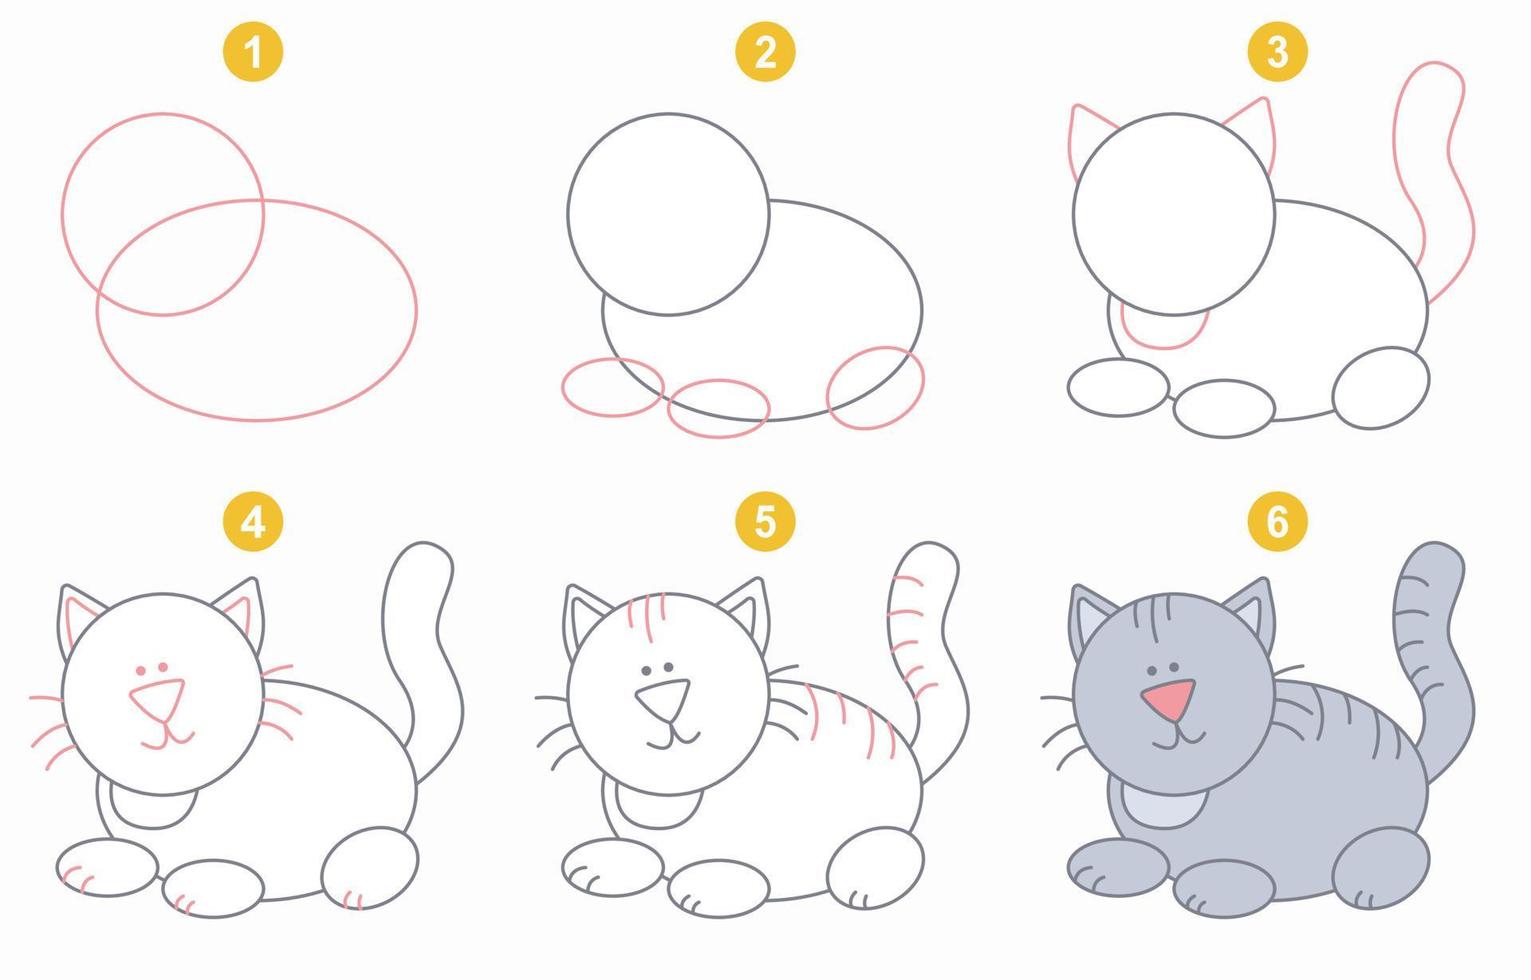 instruções para desenhar gato engraçado. siga passo a passo